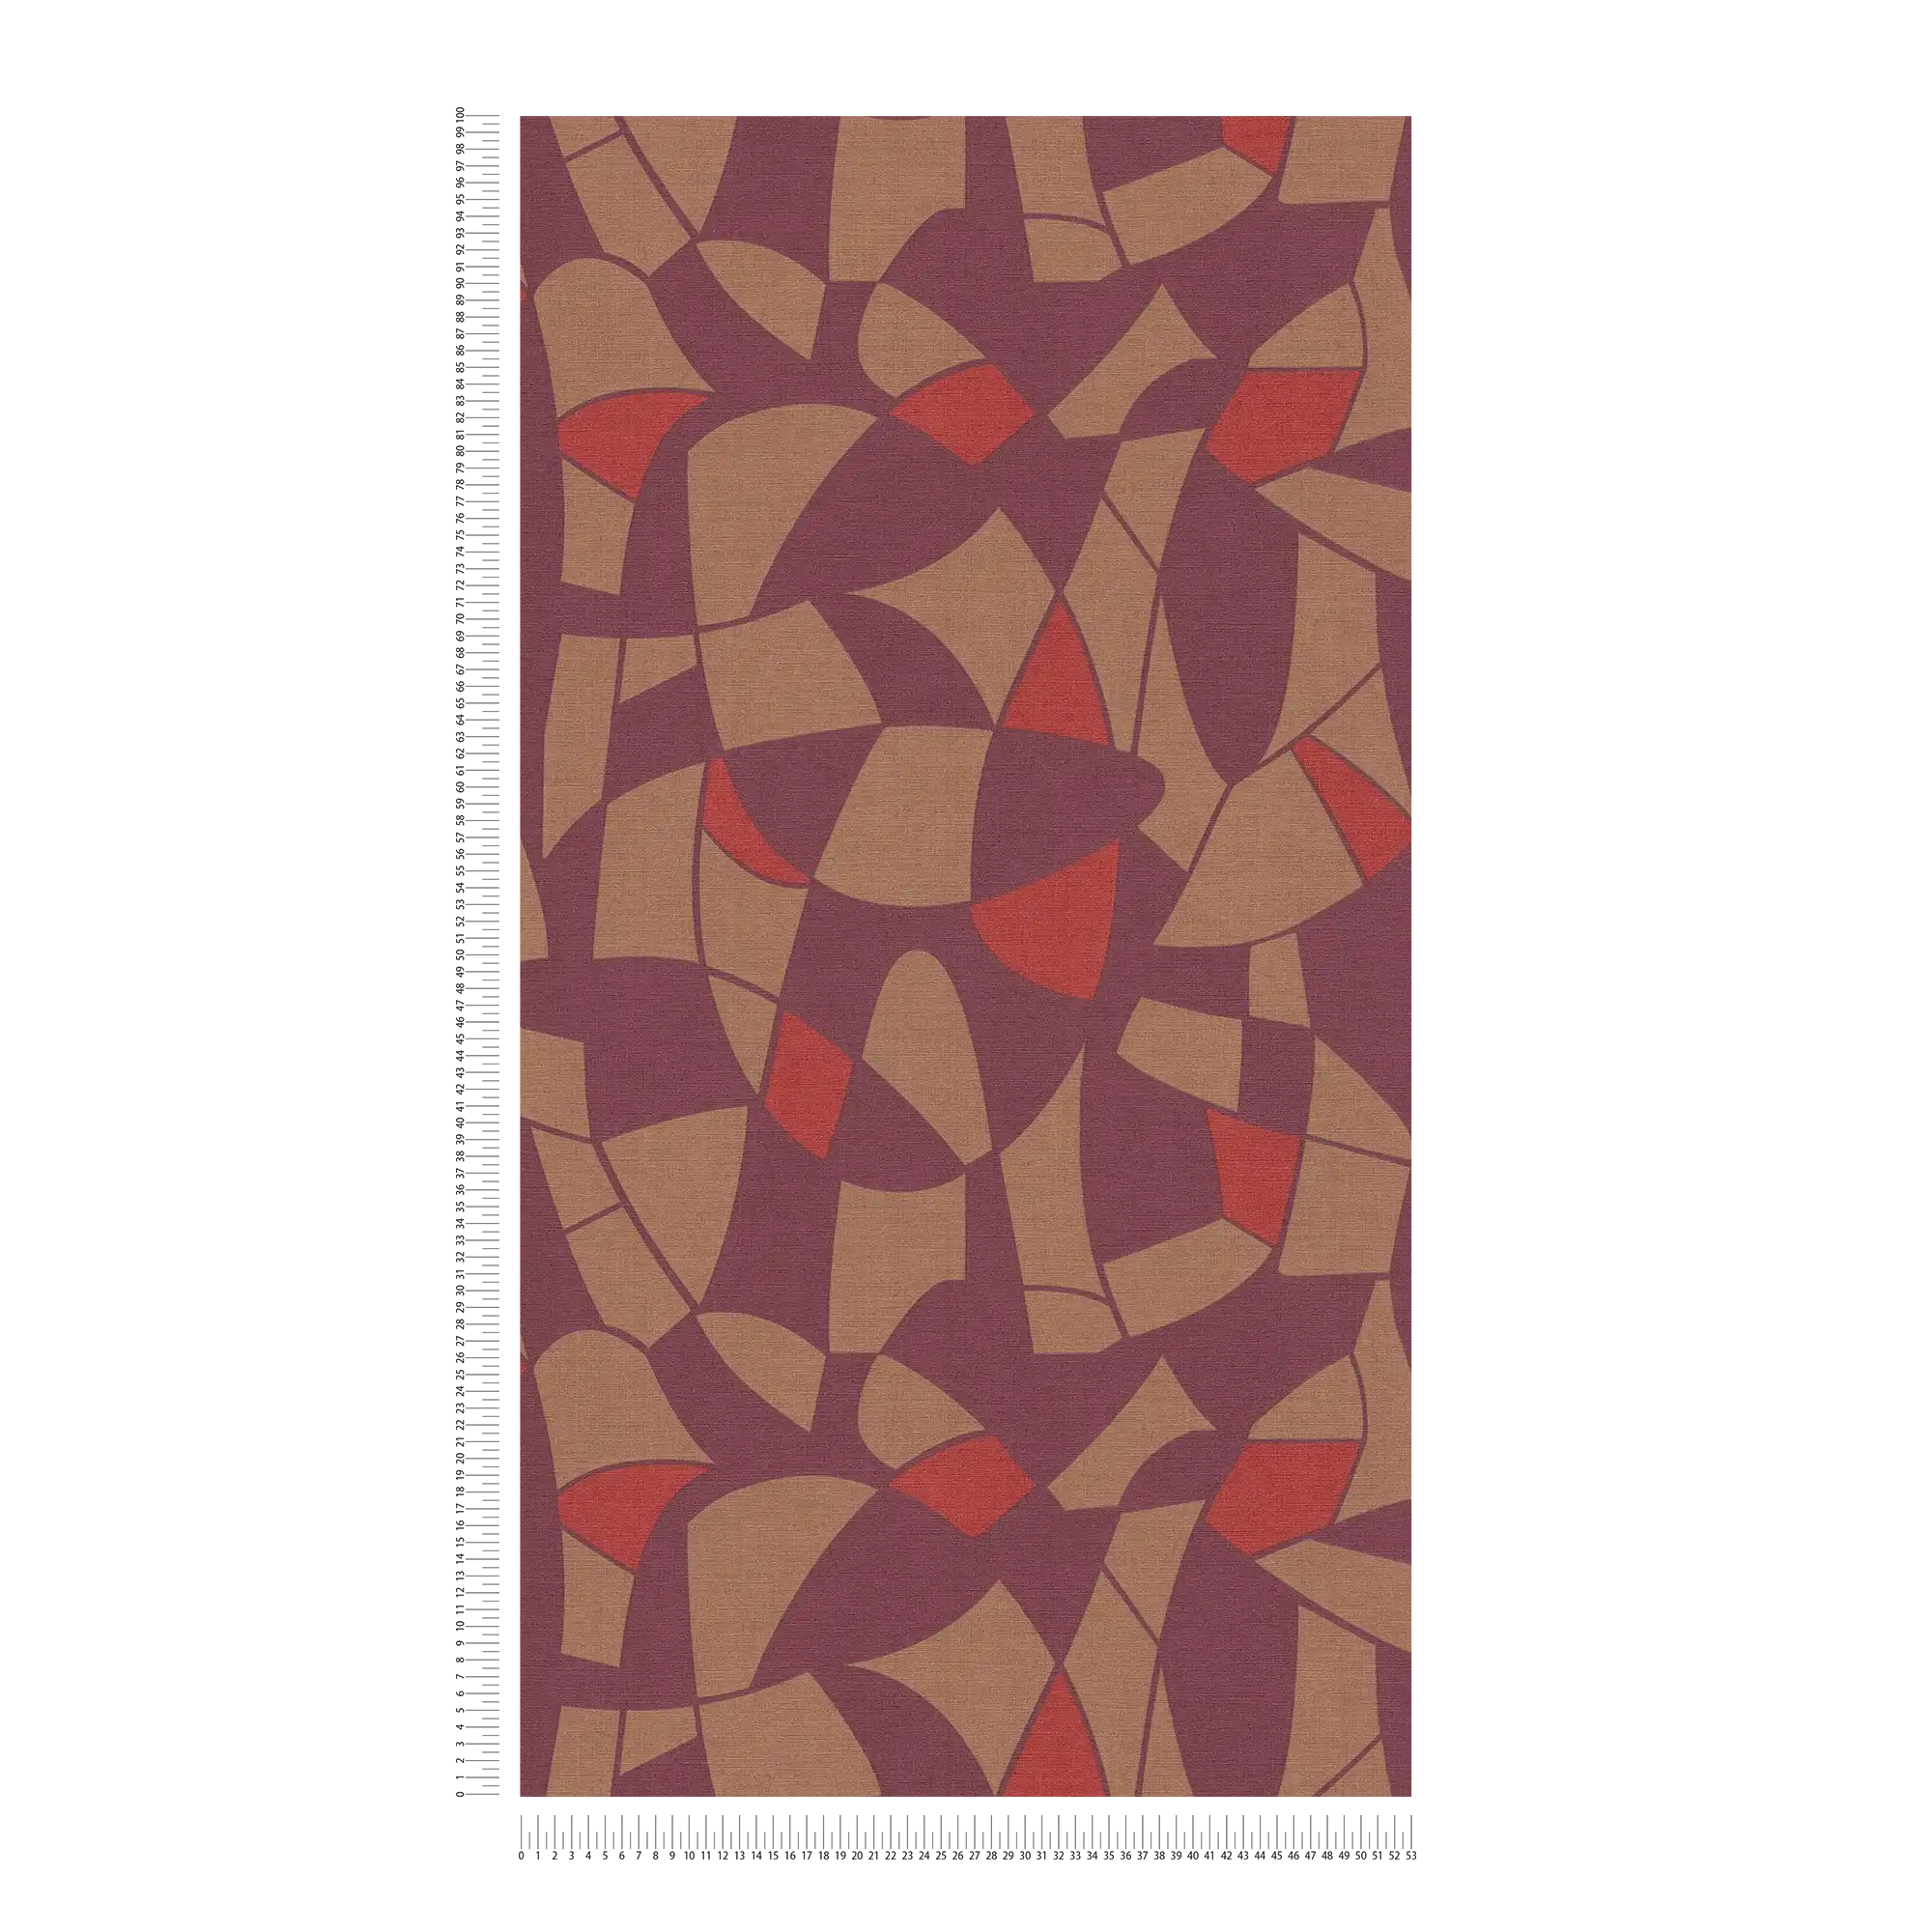             Carta da parati in tessuto non tessuto in colori scuri con un motivo astratto - viola, marrone, rosso
        